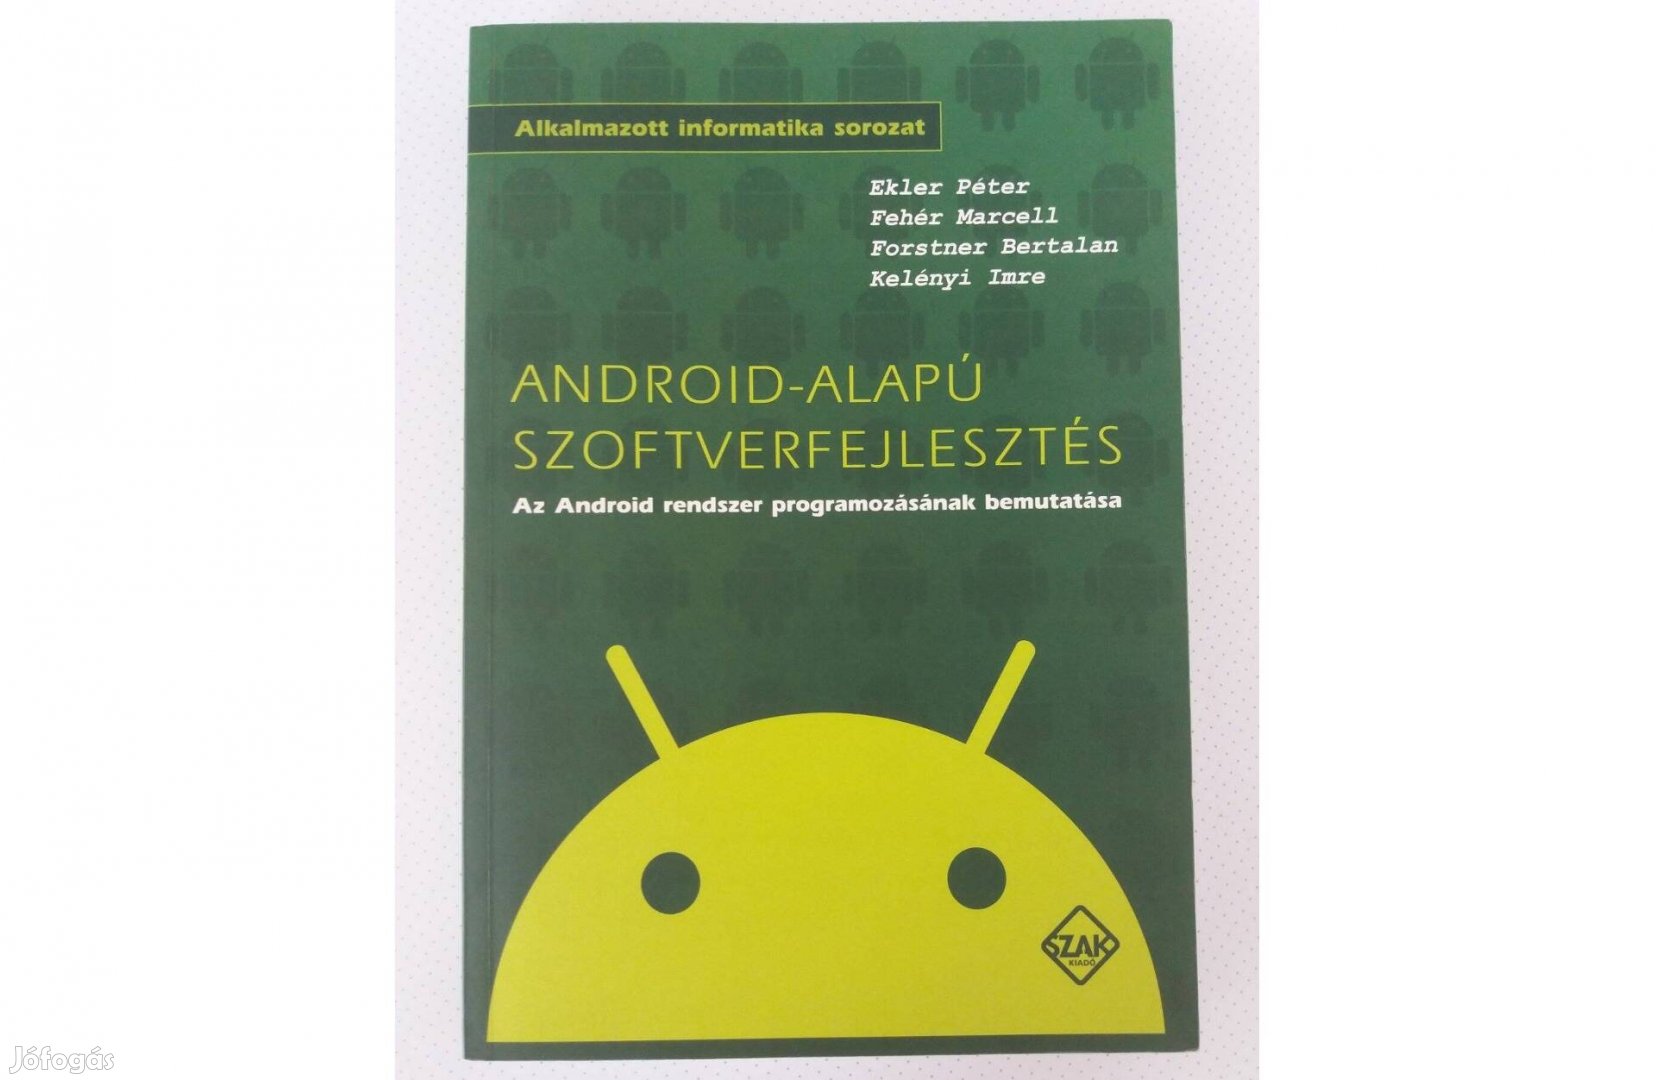 Android-alapú szoftverfejlesztés (Alkalmazott informatika)